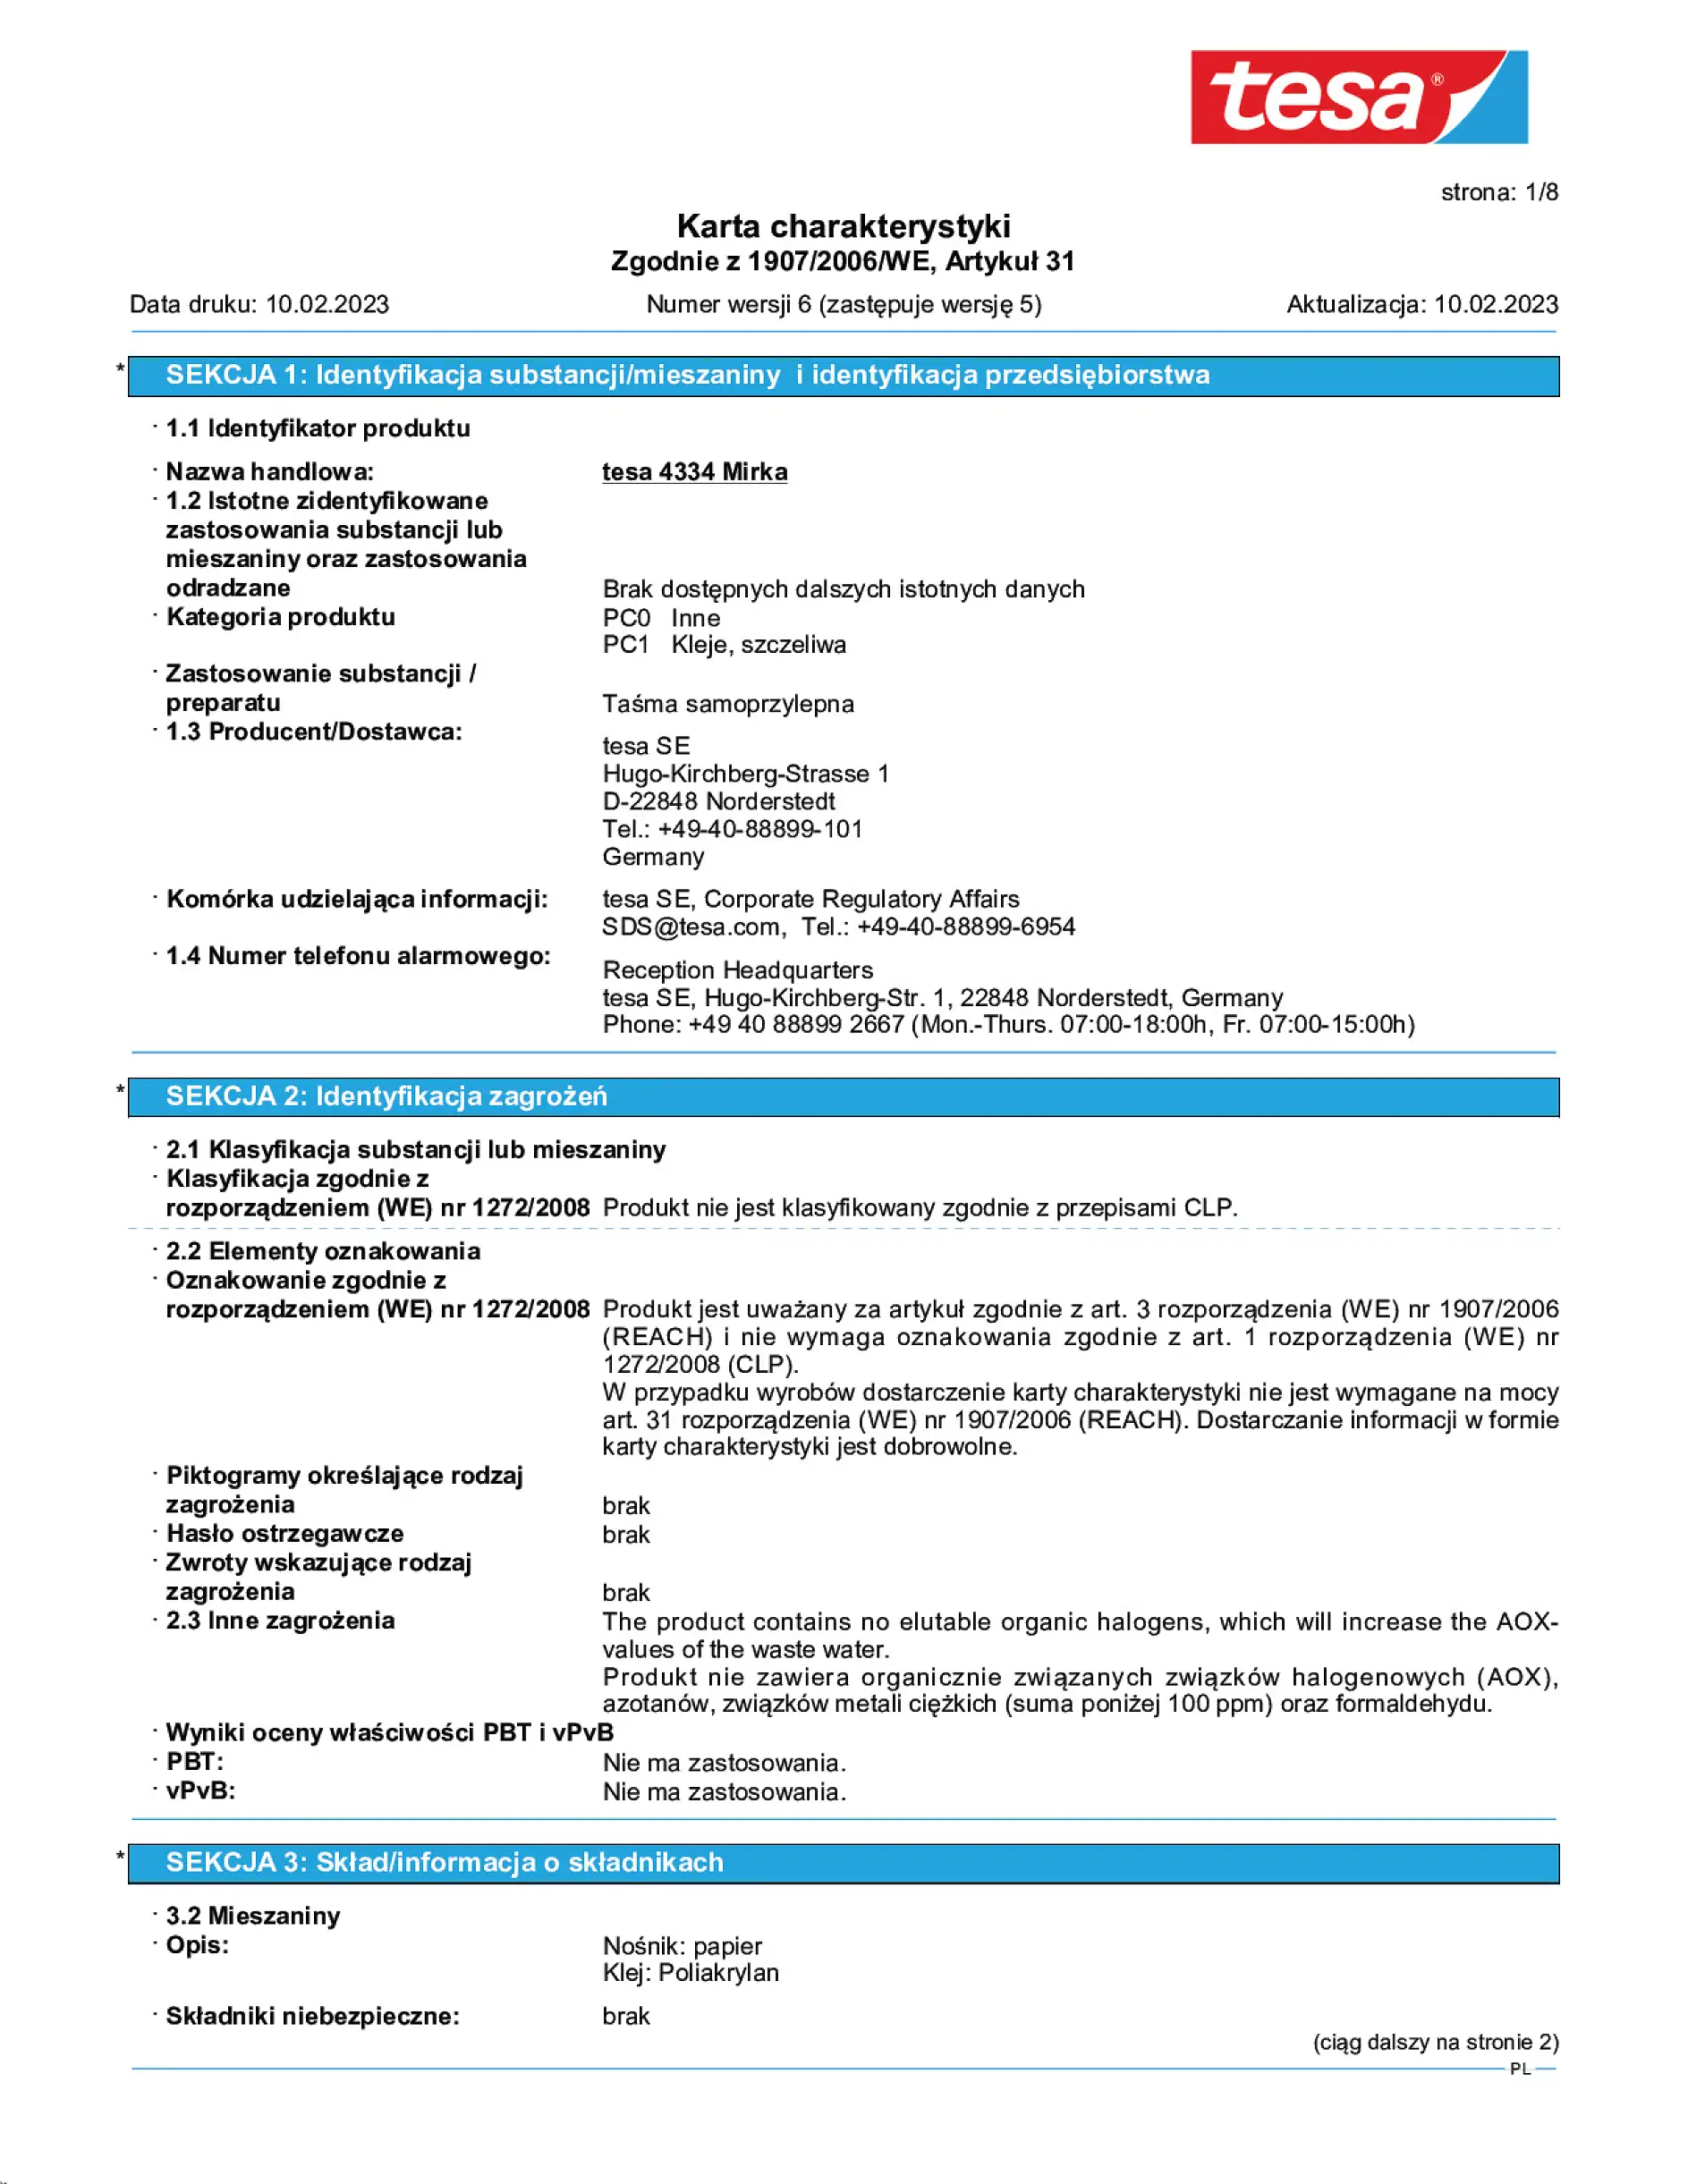 Safety data sheet_tesa® 04334_pl-PL_v6